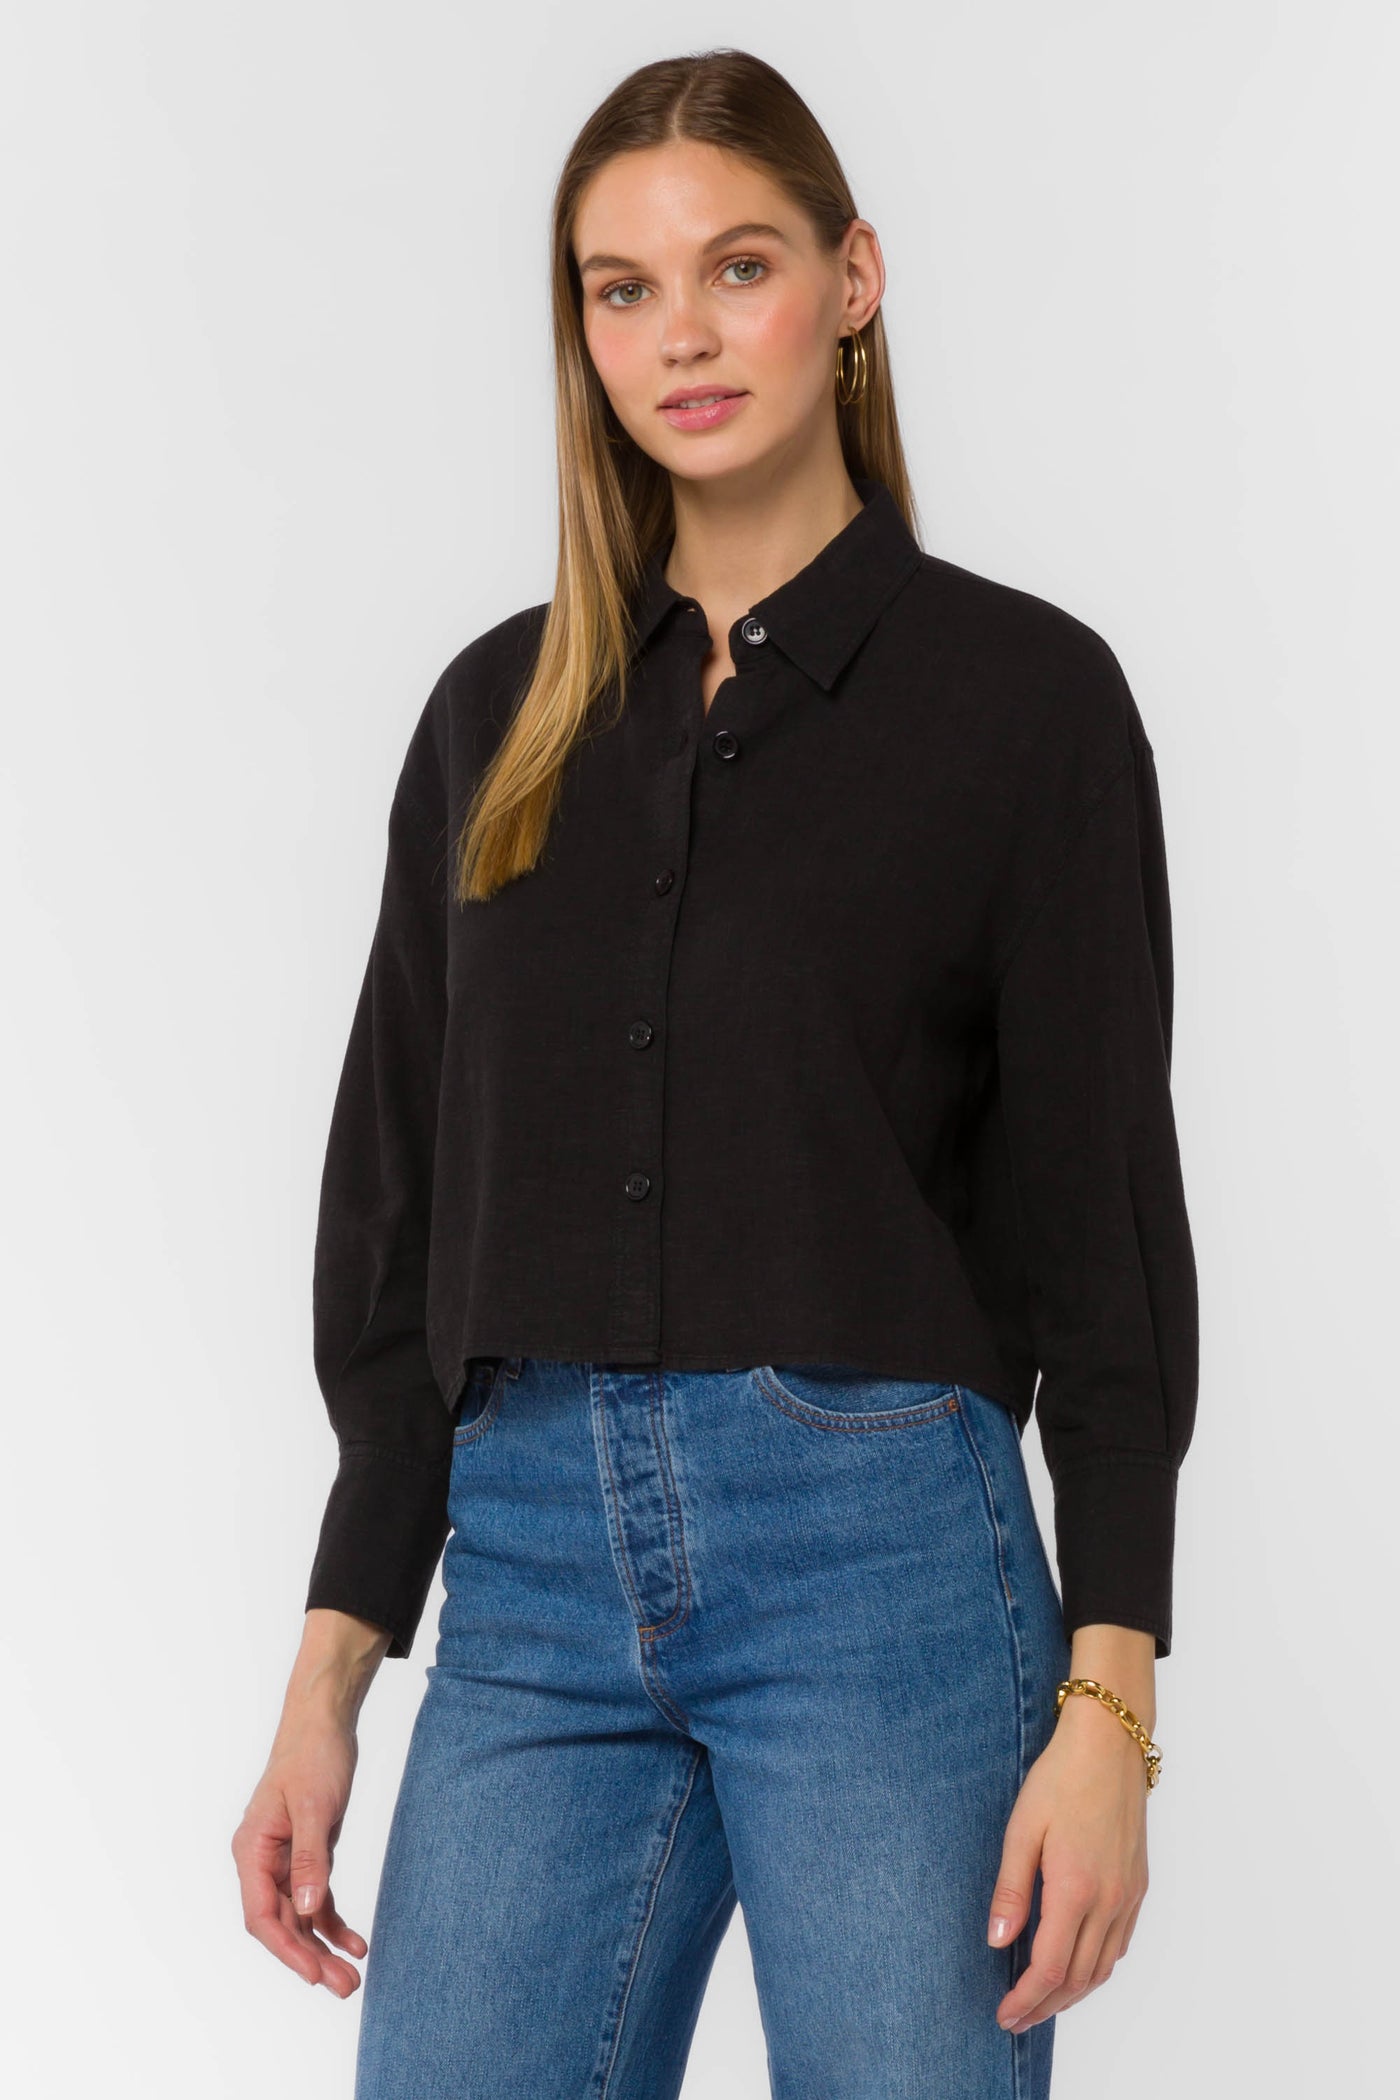 Summerlyn Black Shirt by Velvet Heart Clothing: Summerlyn Black Shirt